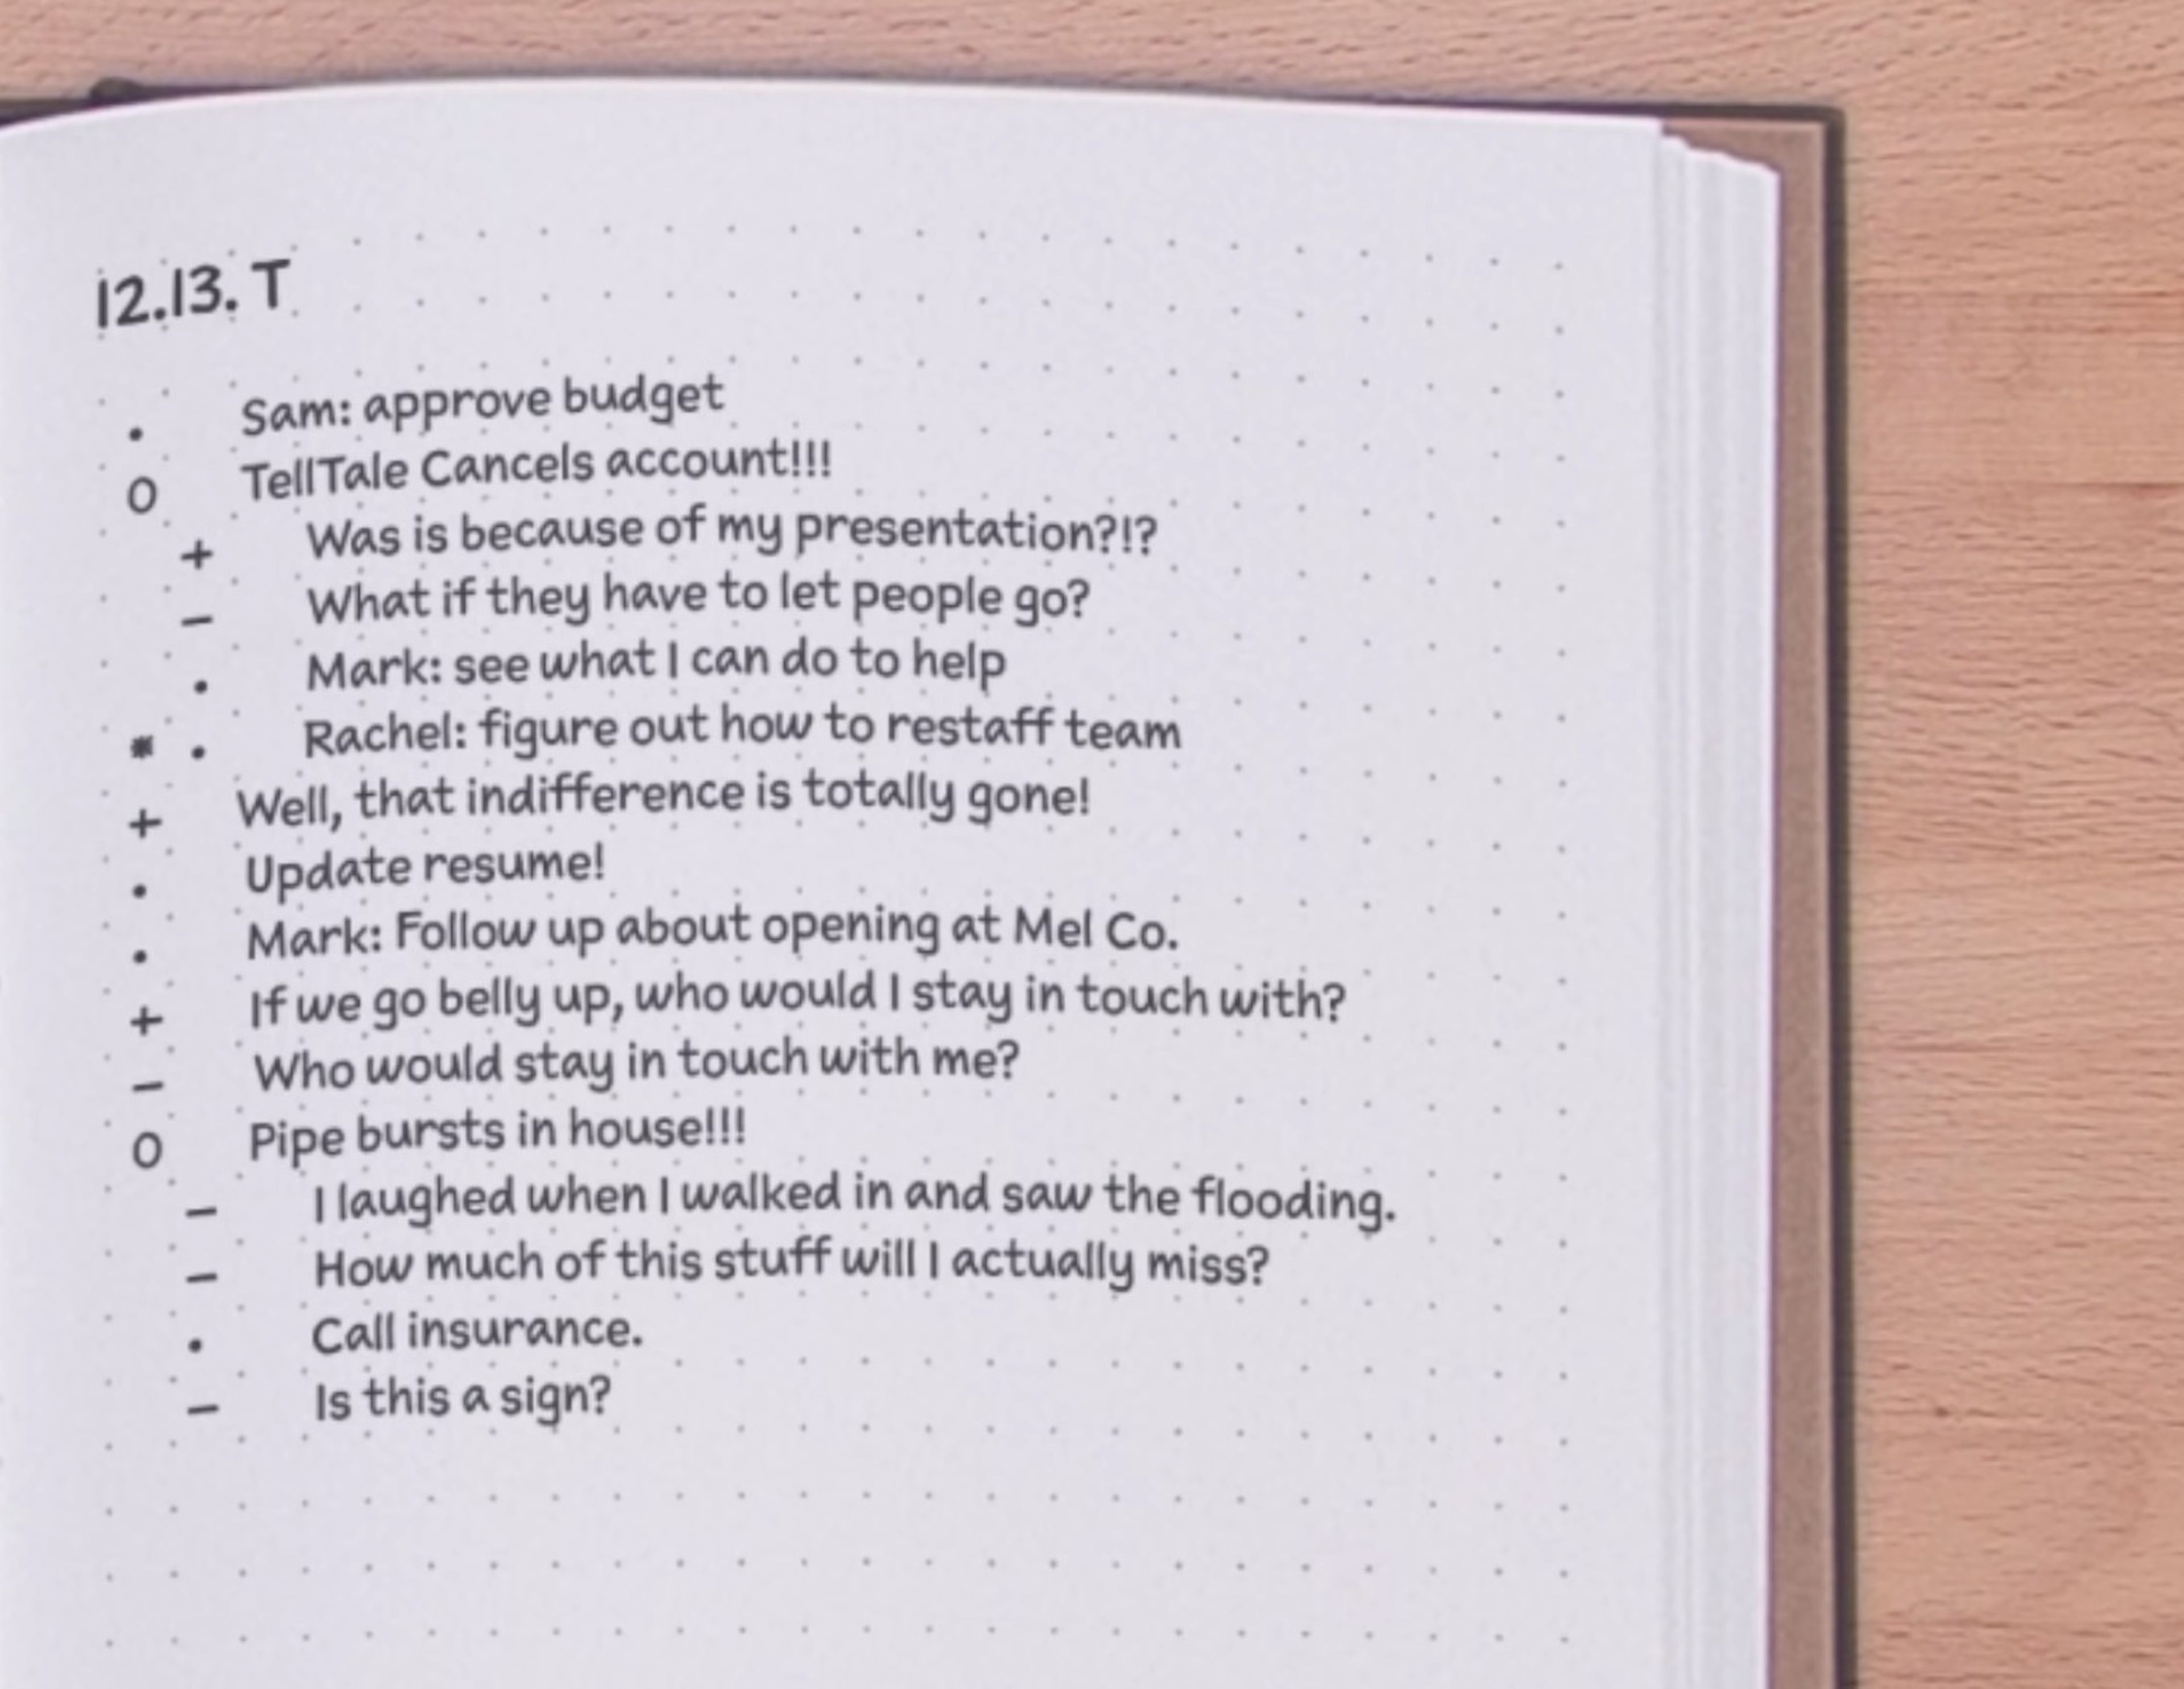 Qué es y cómo funciona Bullet Journal, el sencillo método para organizarte  y mejorar tu productividad